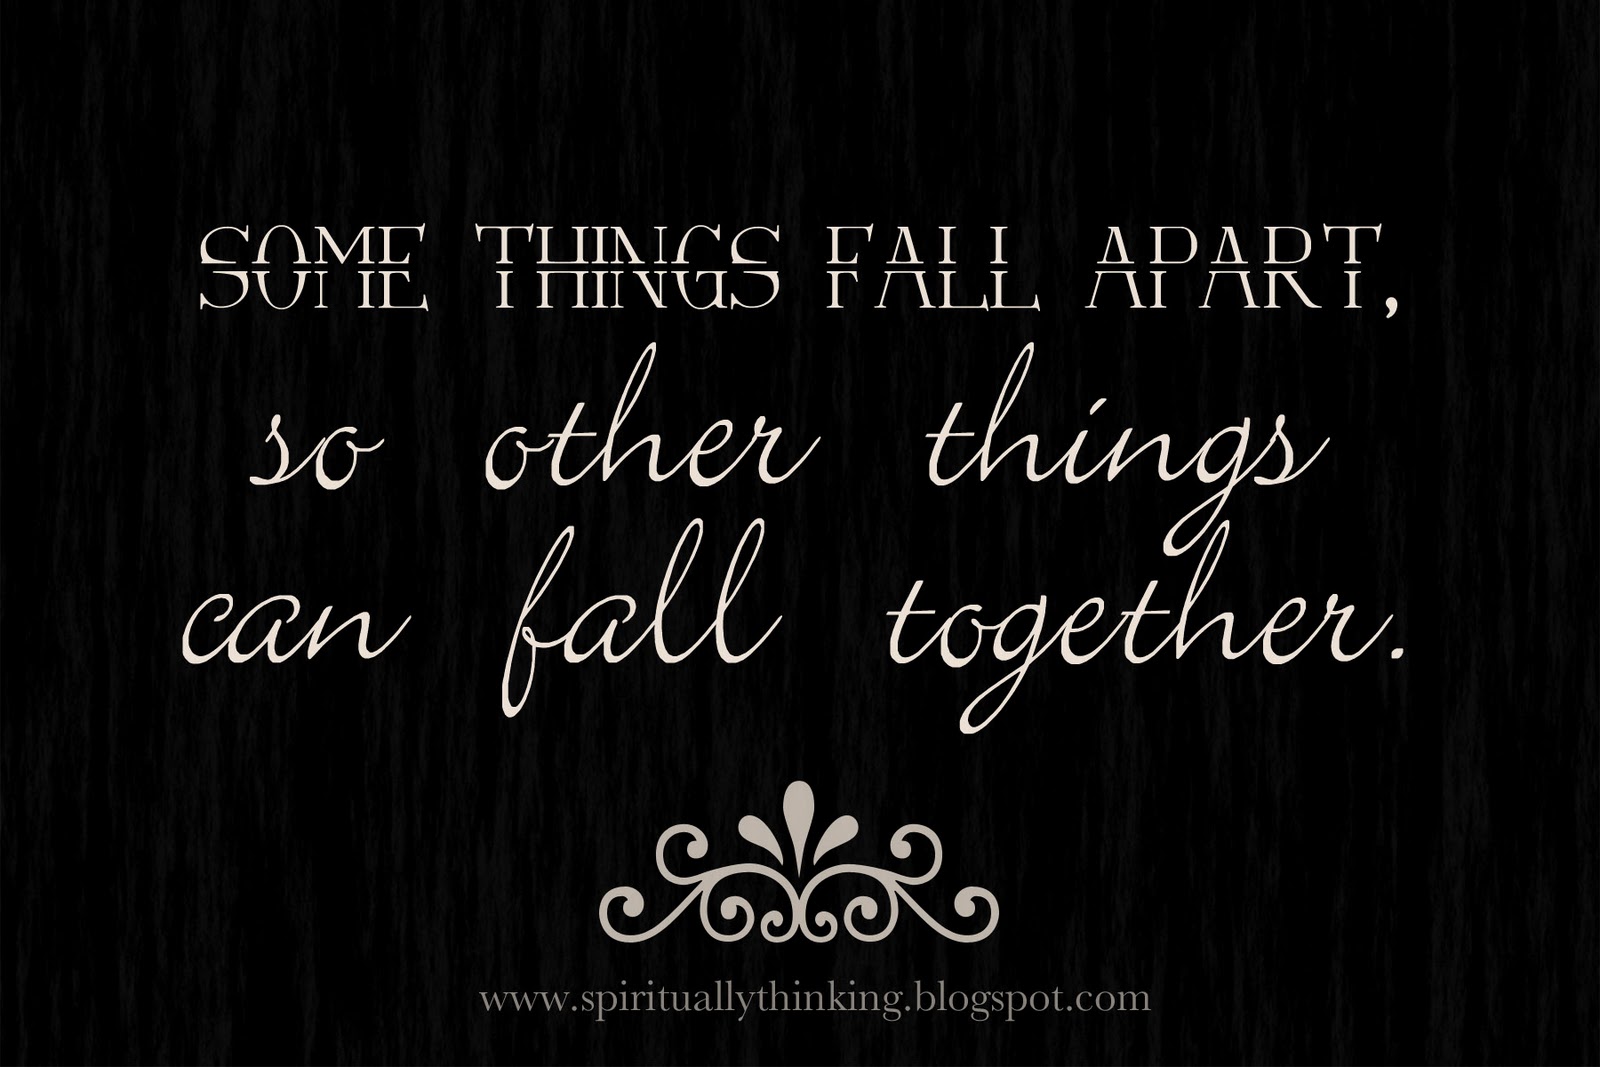 Fall something. Fall Apart. Something Fall Apart. Things Fall Apart Chapter 11 quotes. I Fall Apart sometimes.